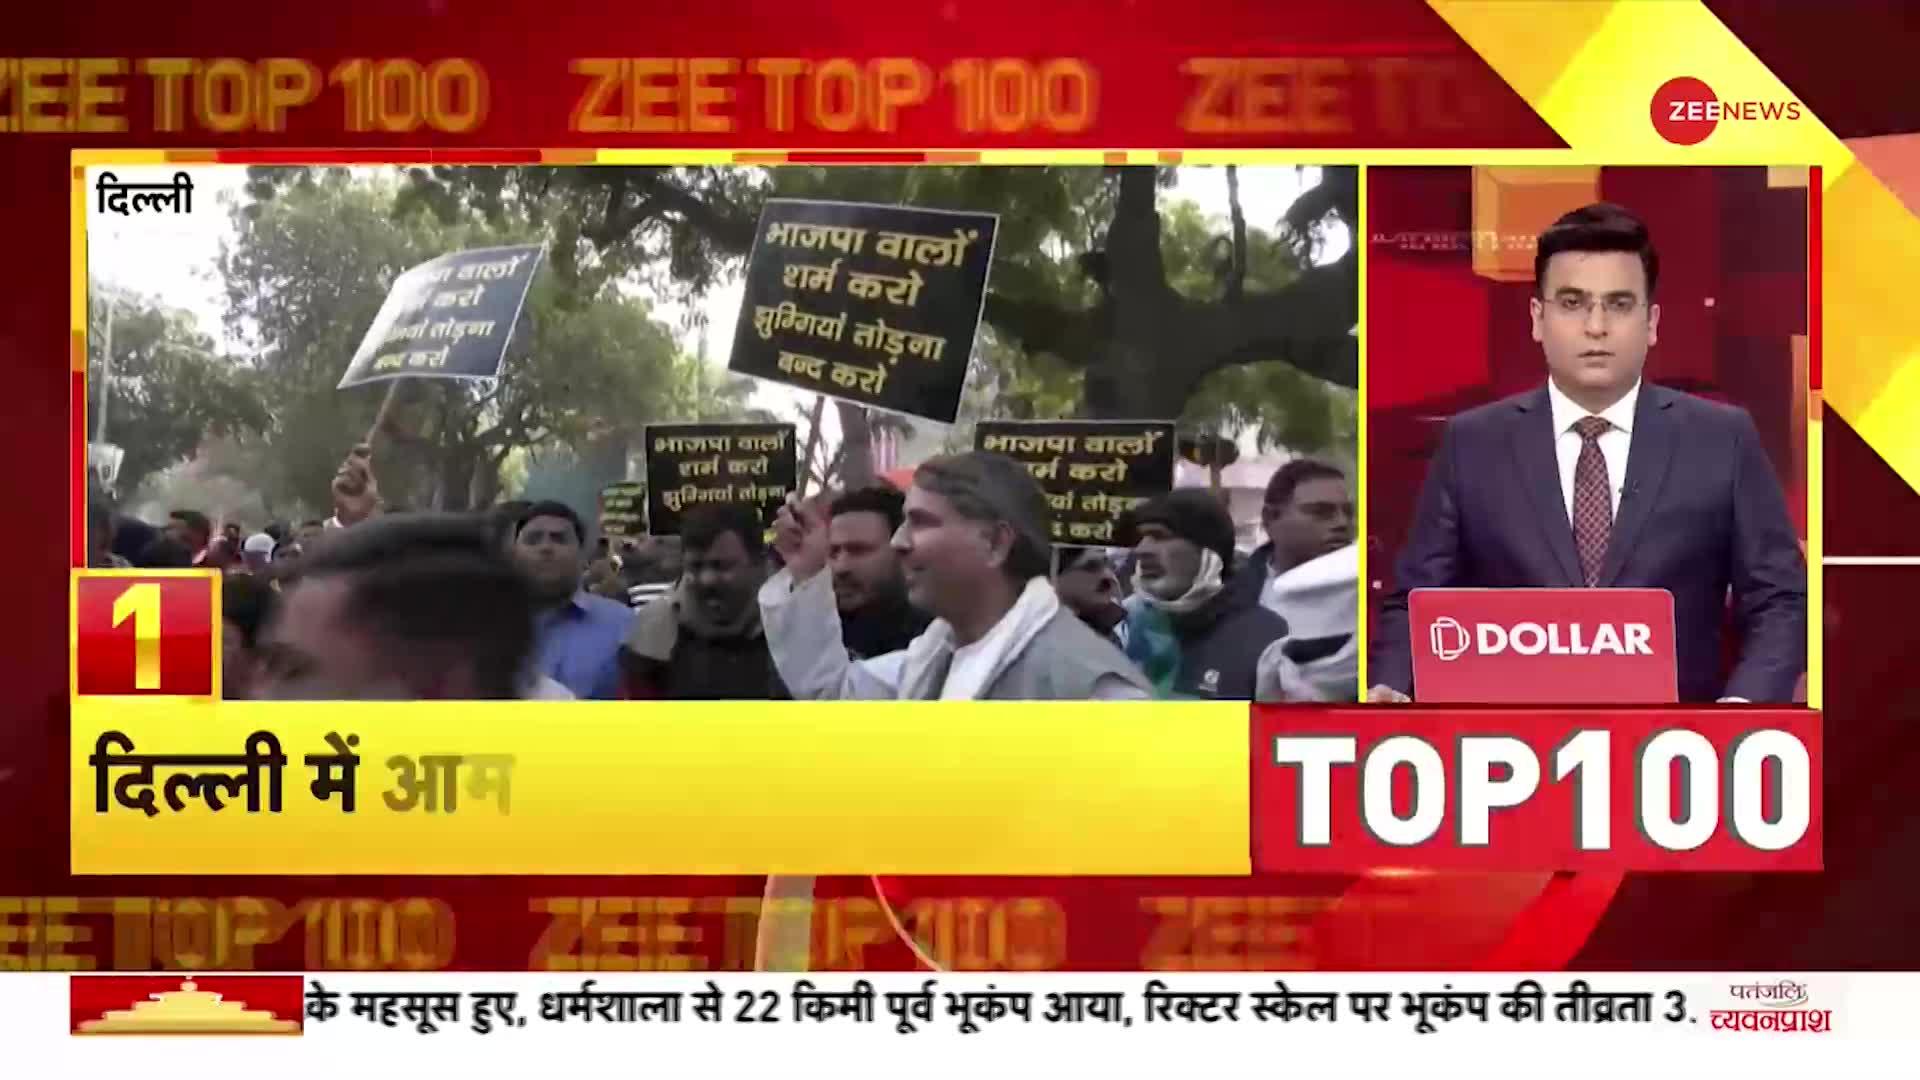 TOP 100: दिल्ली में प्रदर्शनकारियों पर वॉटर केनन का इस्तेमाल, देश भर में मकर संक्रांति की धूम